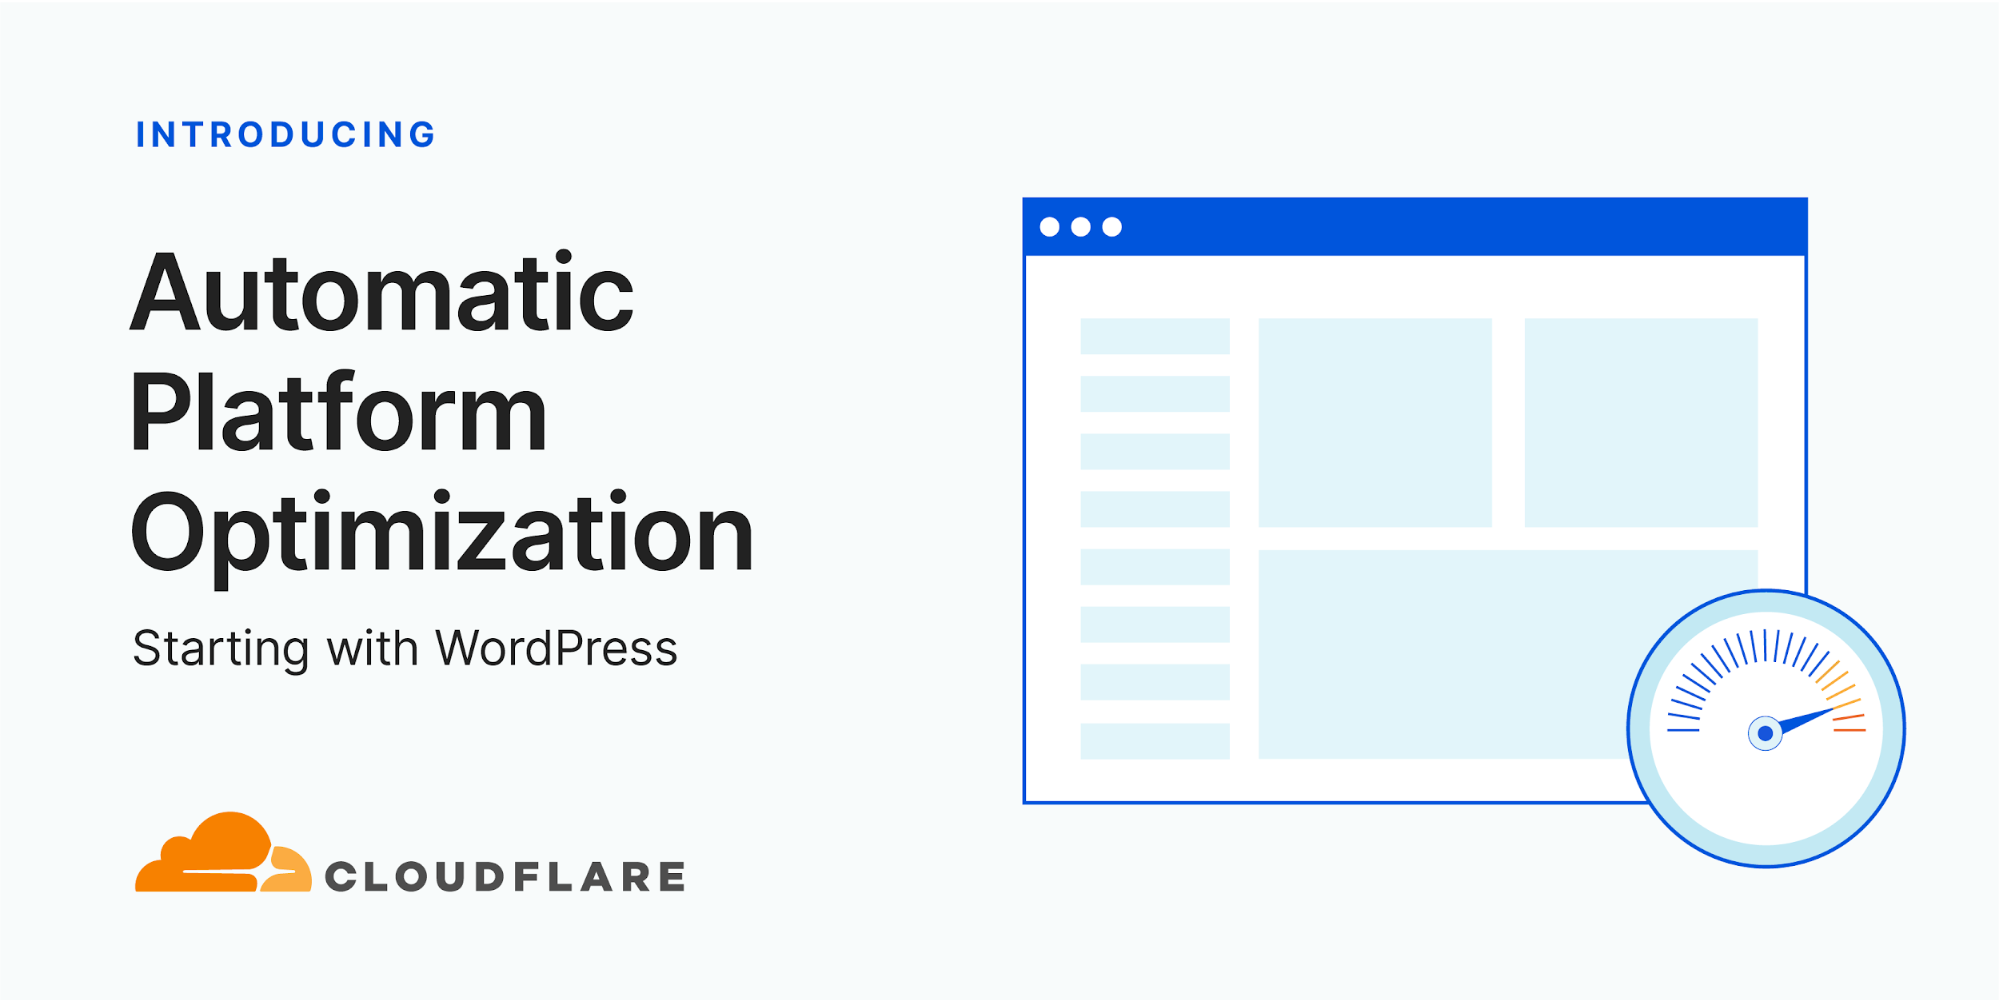 Wir stellen vor: Automatic Platform Optimization, angefangen bei WordPress